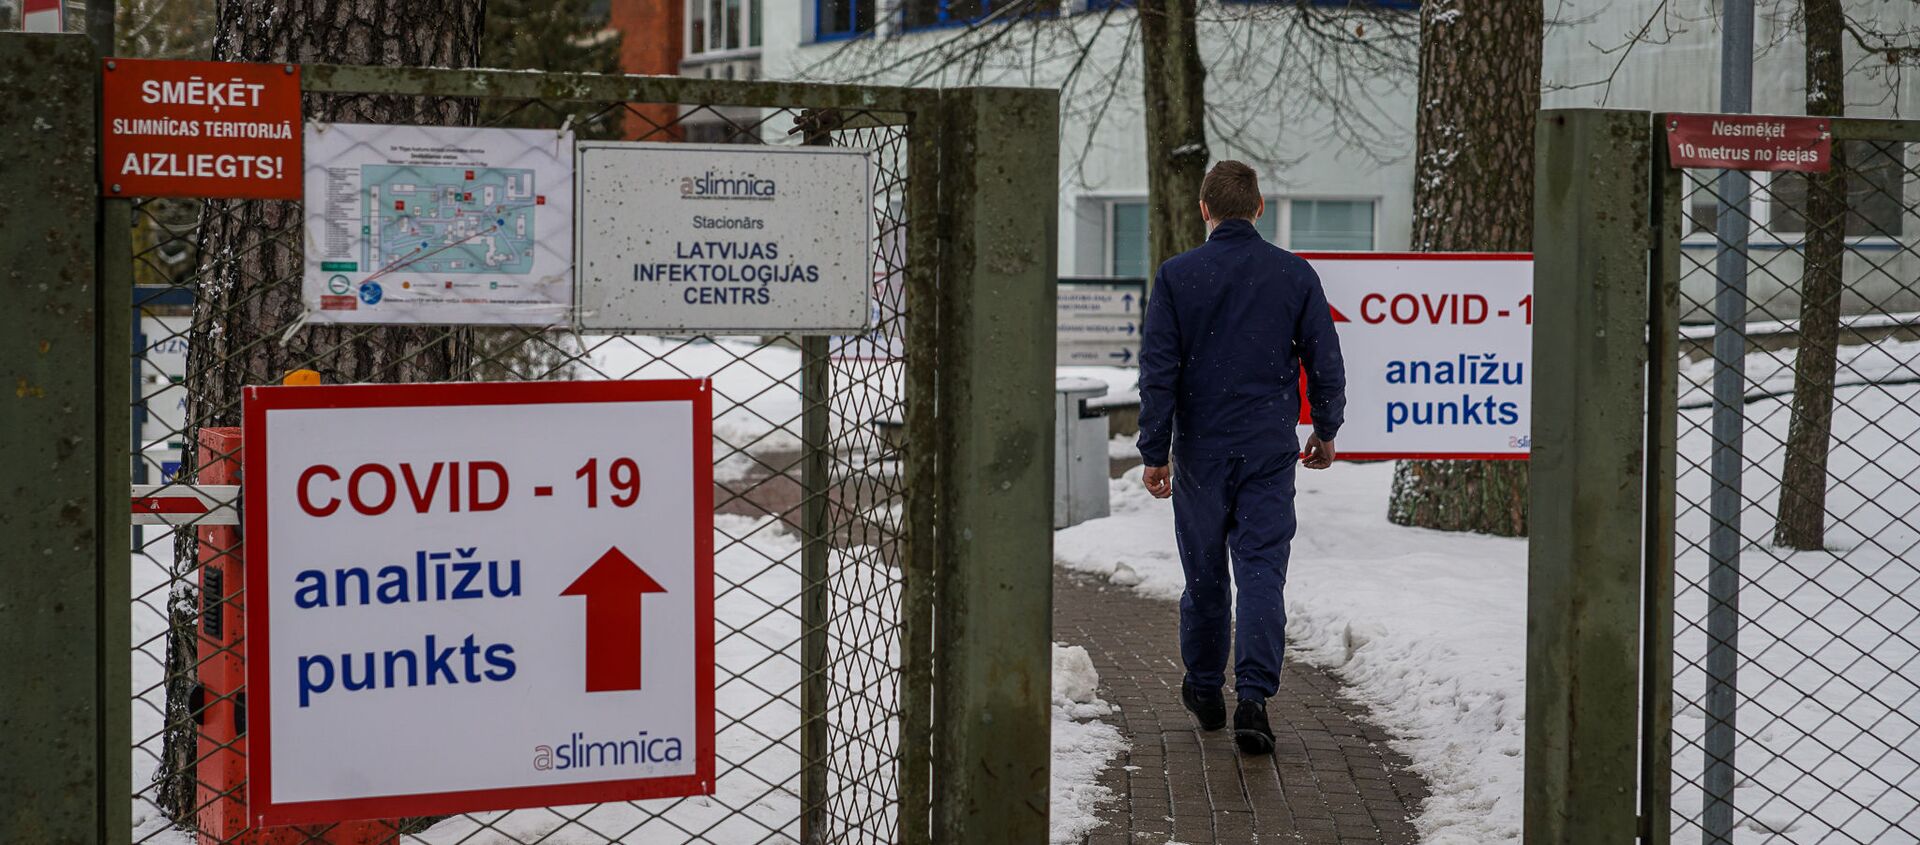 Мужчина направляется в пункт приема тестов на COVID-19 в Латвийском центре инфектологии - Sputnik Латвия, 1920, 04.02.2021